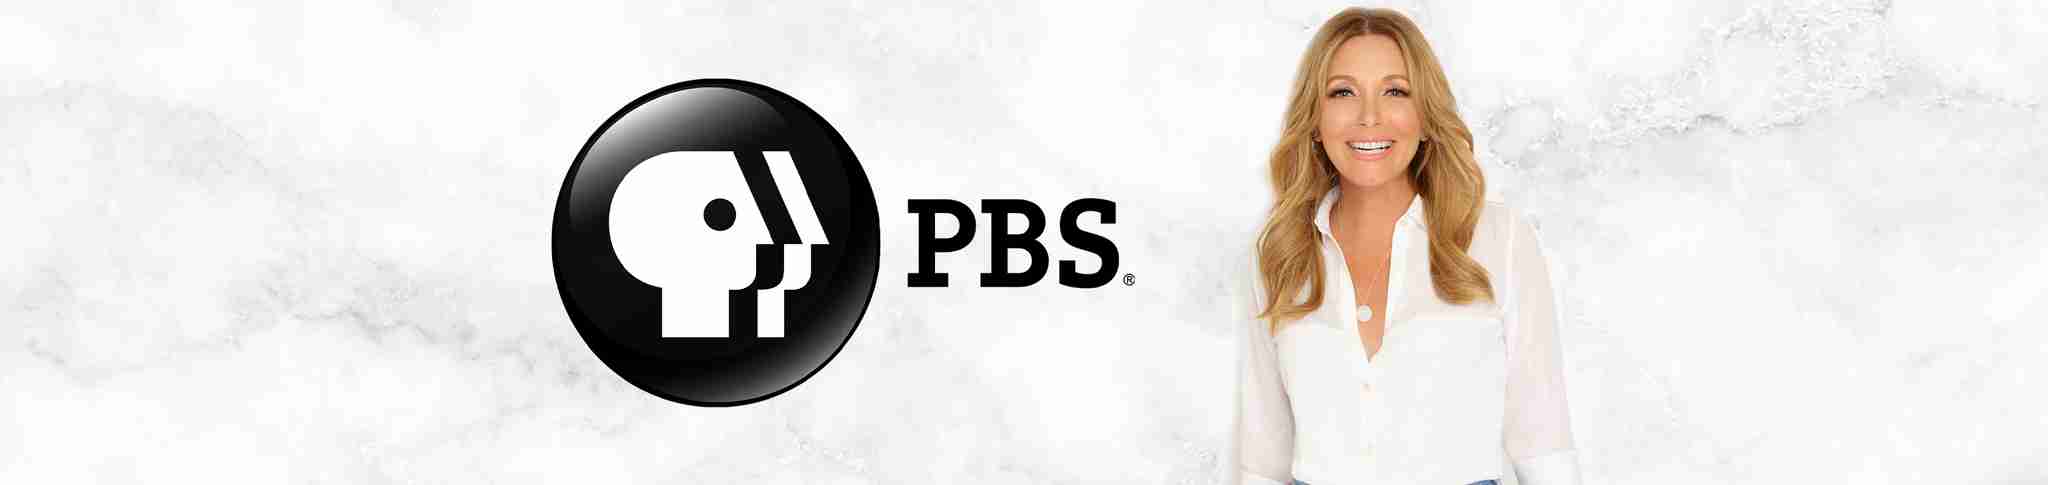 Dr. Kellyann avec logo PBS